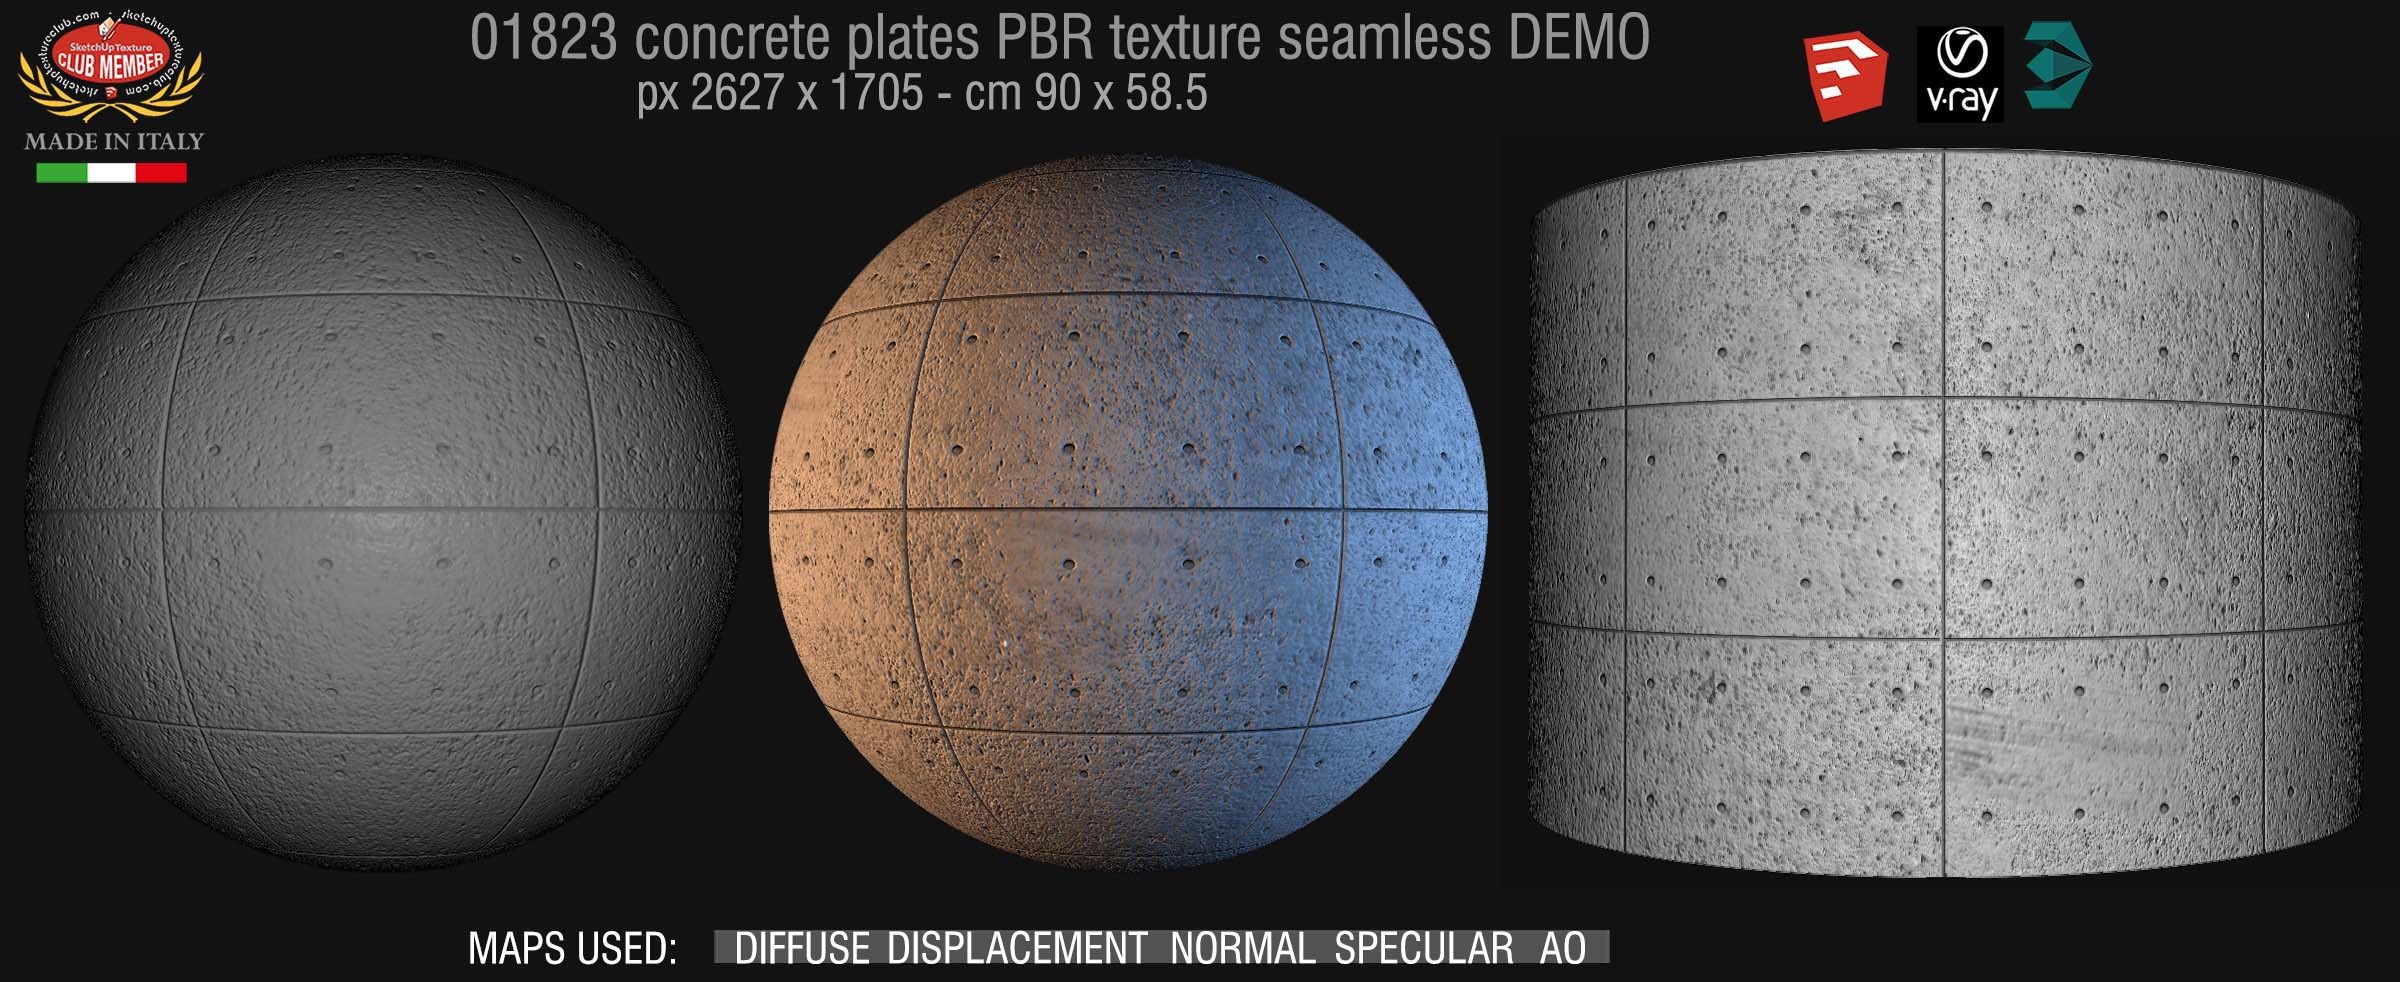 01823 Tadao Ando concrete plates PBR texture seamless DEMO